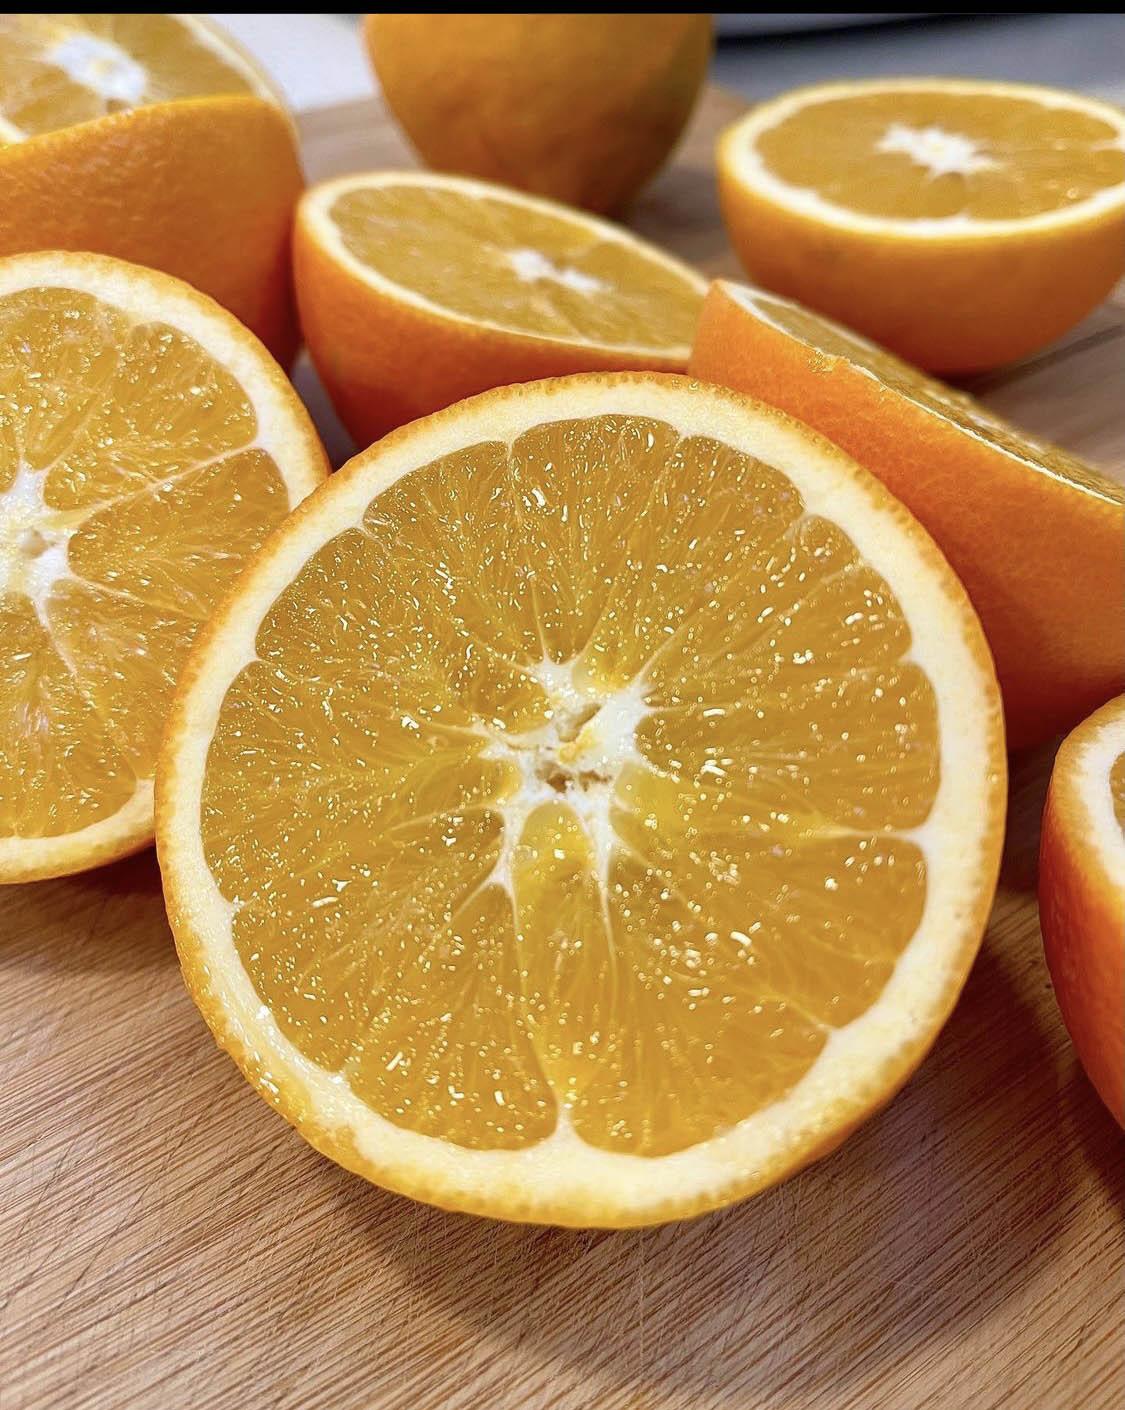 En el Valle del Guadalquivir se han dado producciones de naranjas de una altísima calidad e introduciendo cultivos ecológicos que son referencia a nivel internacional